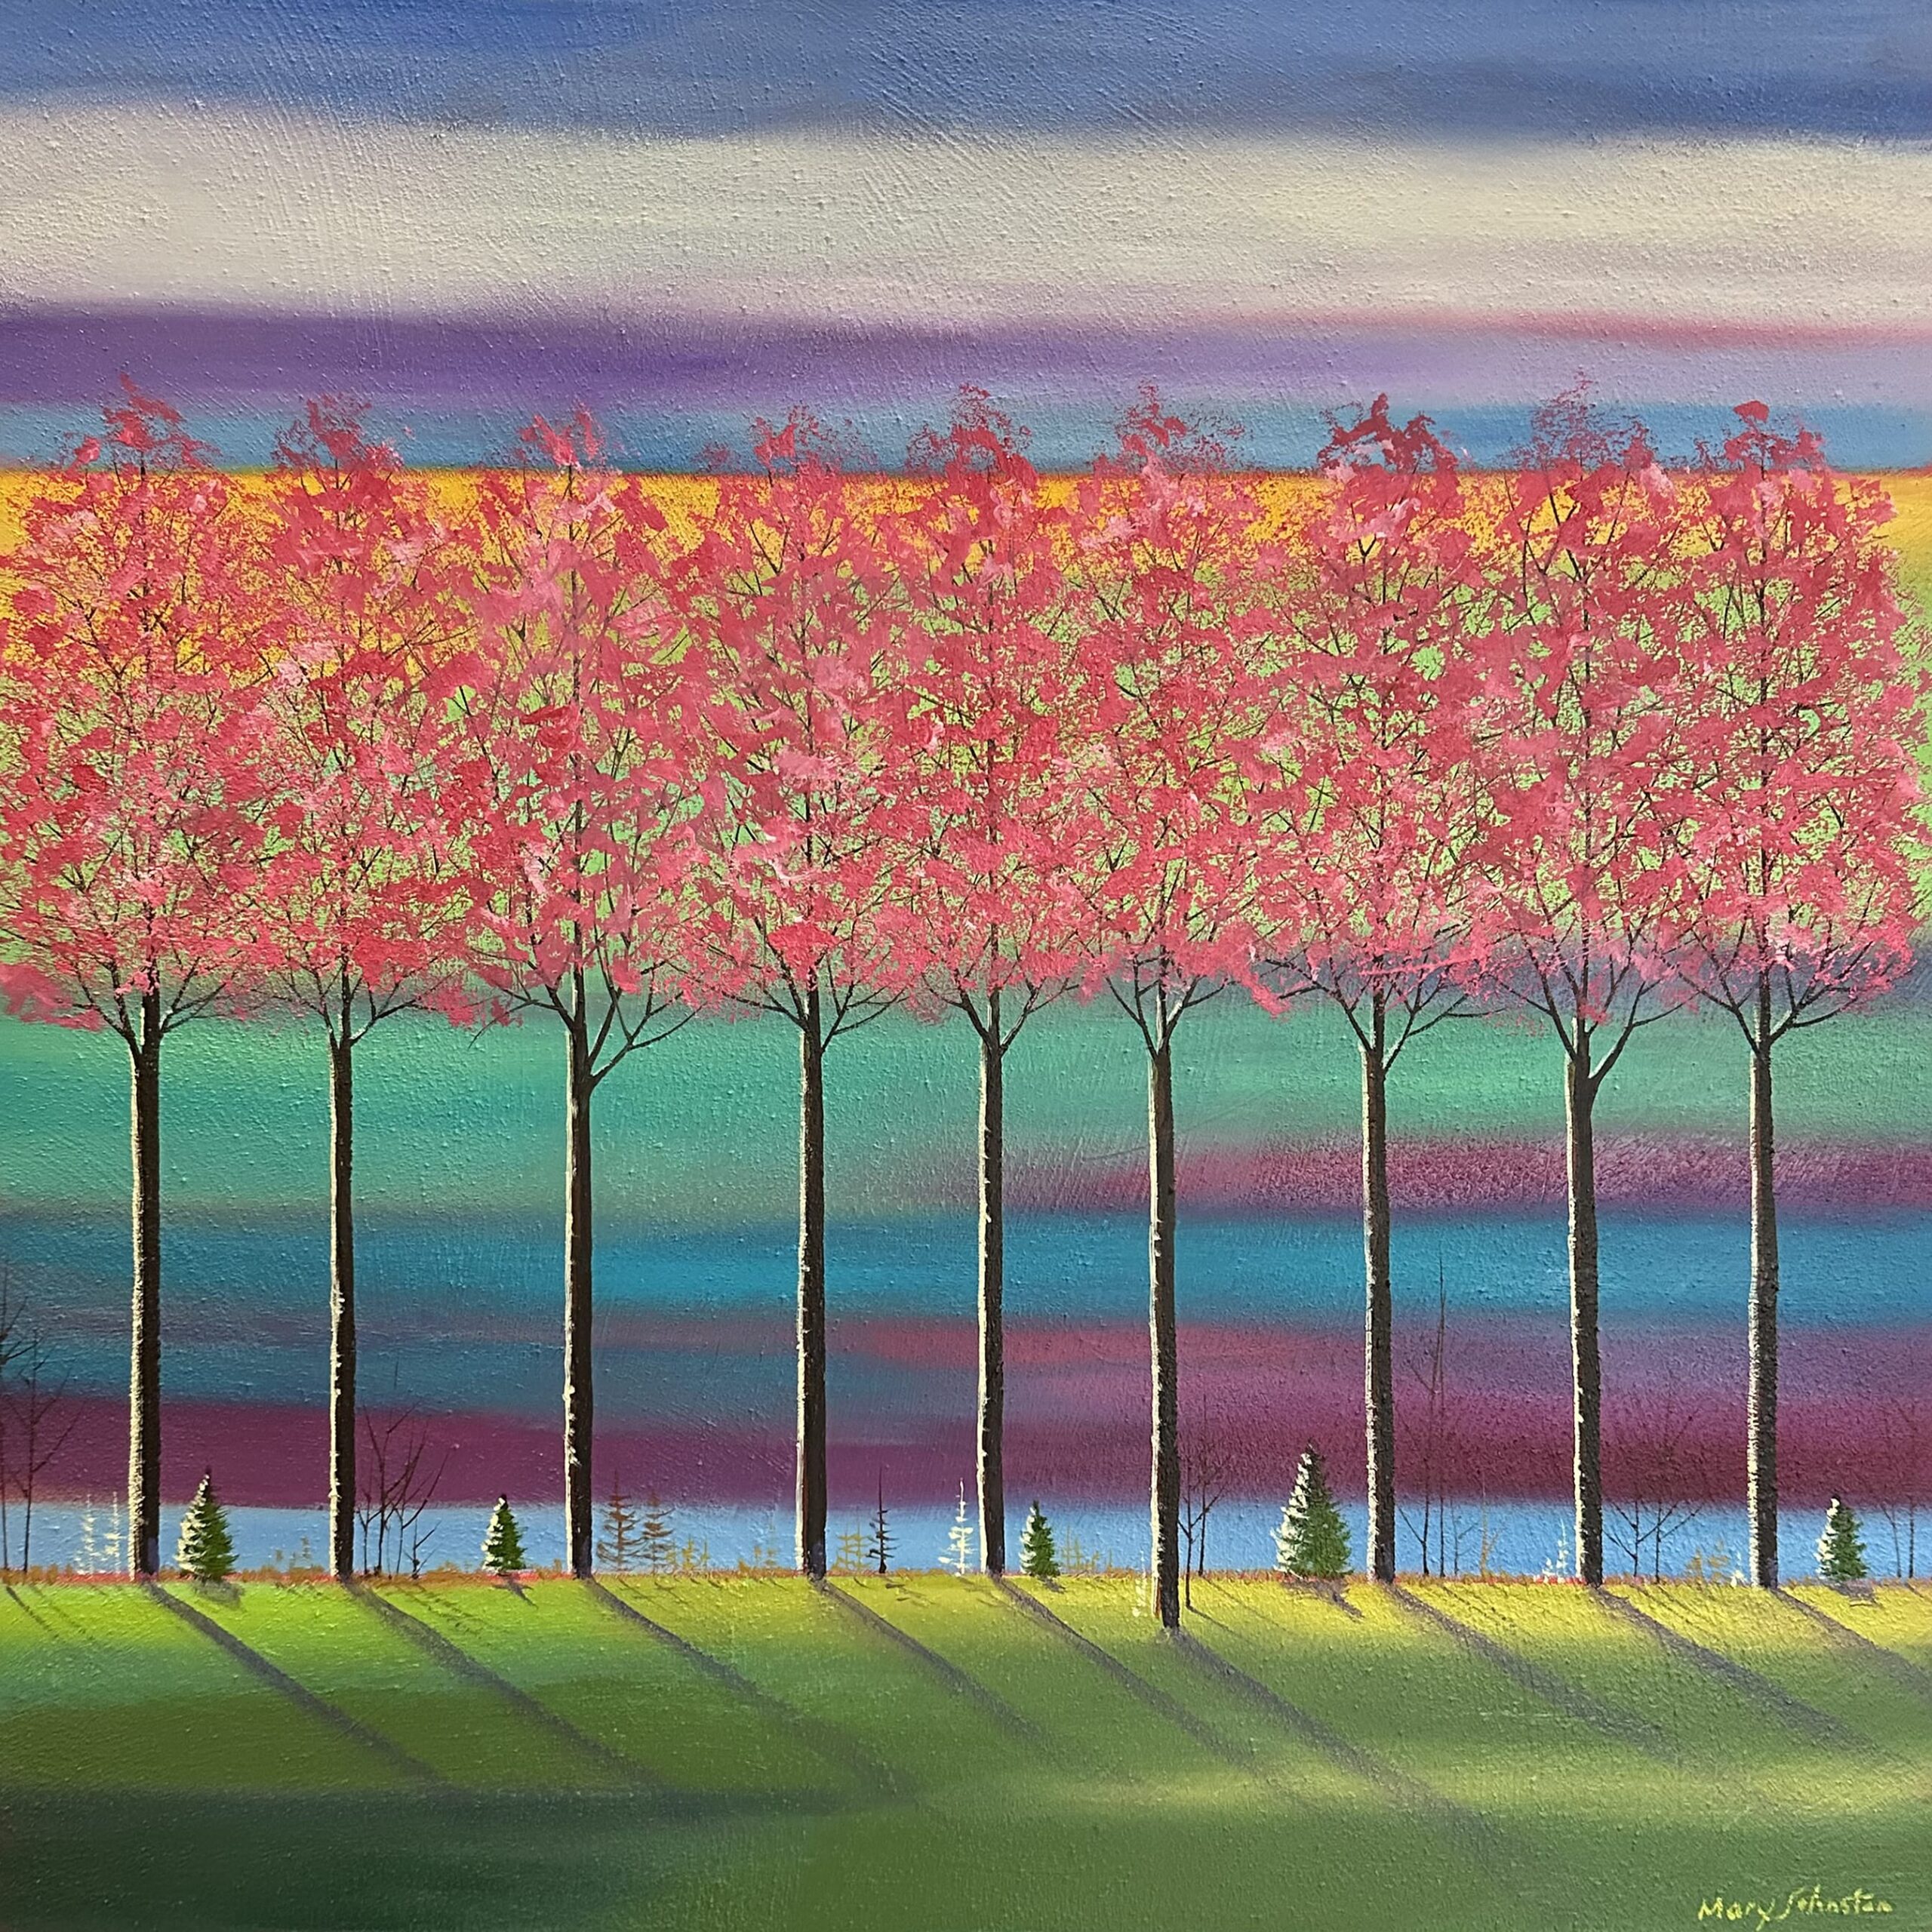 Tableau représentant un paysage aux arbres roses